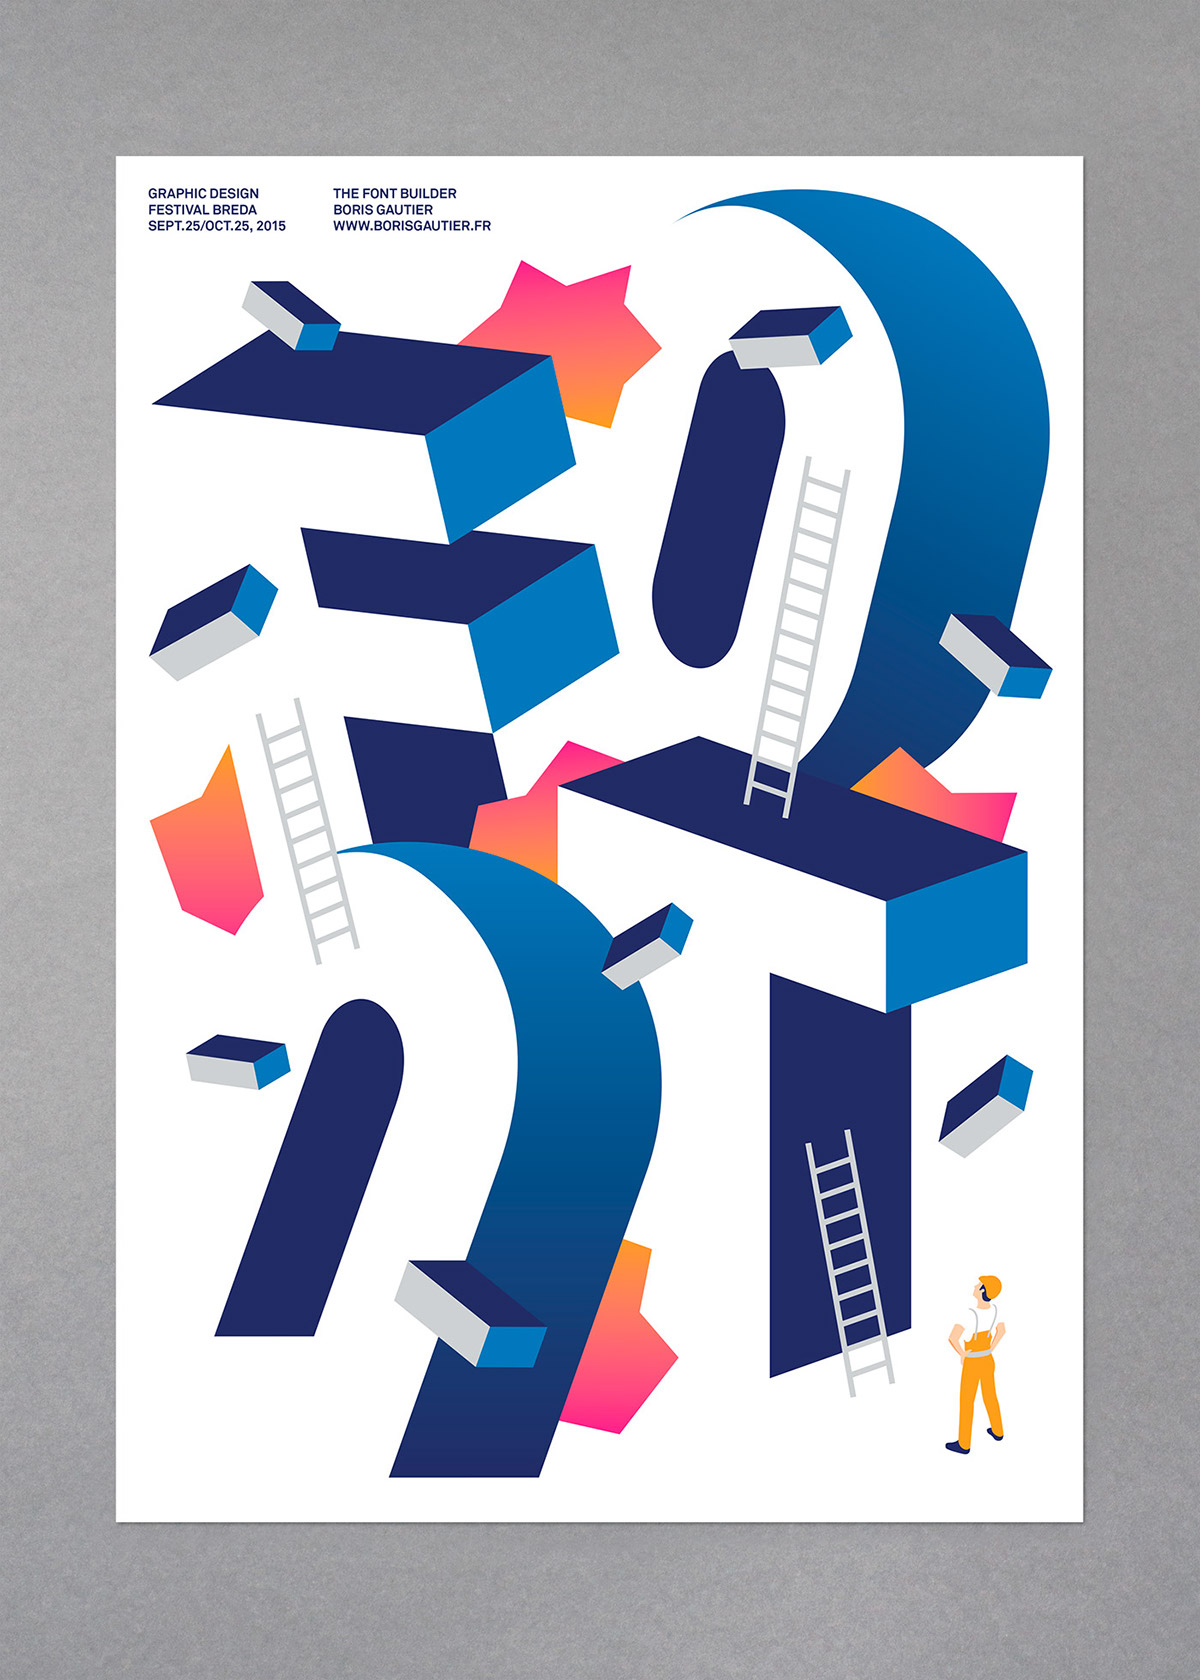 breda festival posters contest thefontbuilder stillsurprisingyou Paris vector font Web pages colors ladder